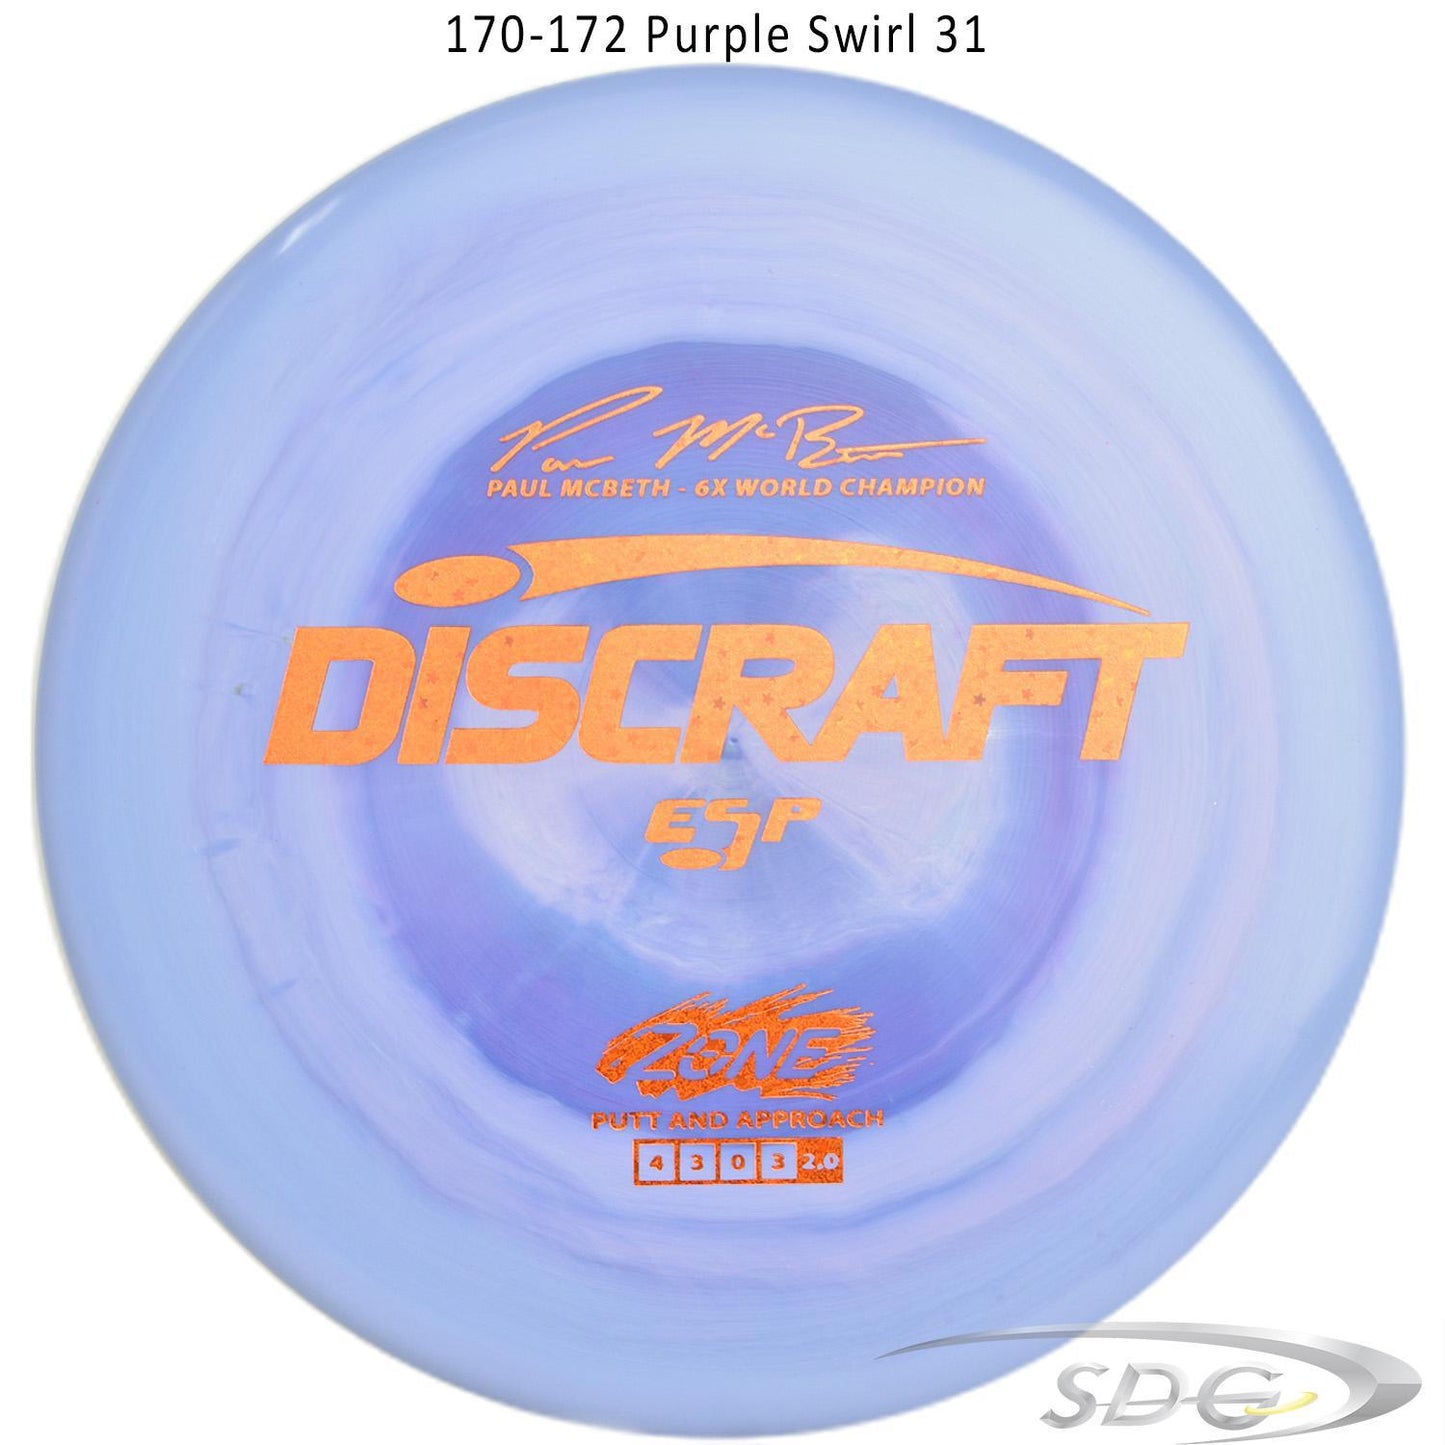 discraft-esp-zone-6x-paul-mcbeth-signature-series-disc-golf-putter 170-172 Purple Swirl 31